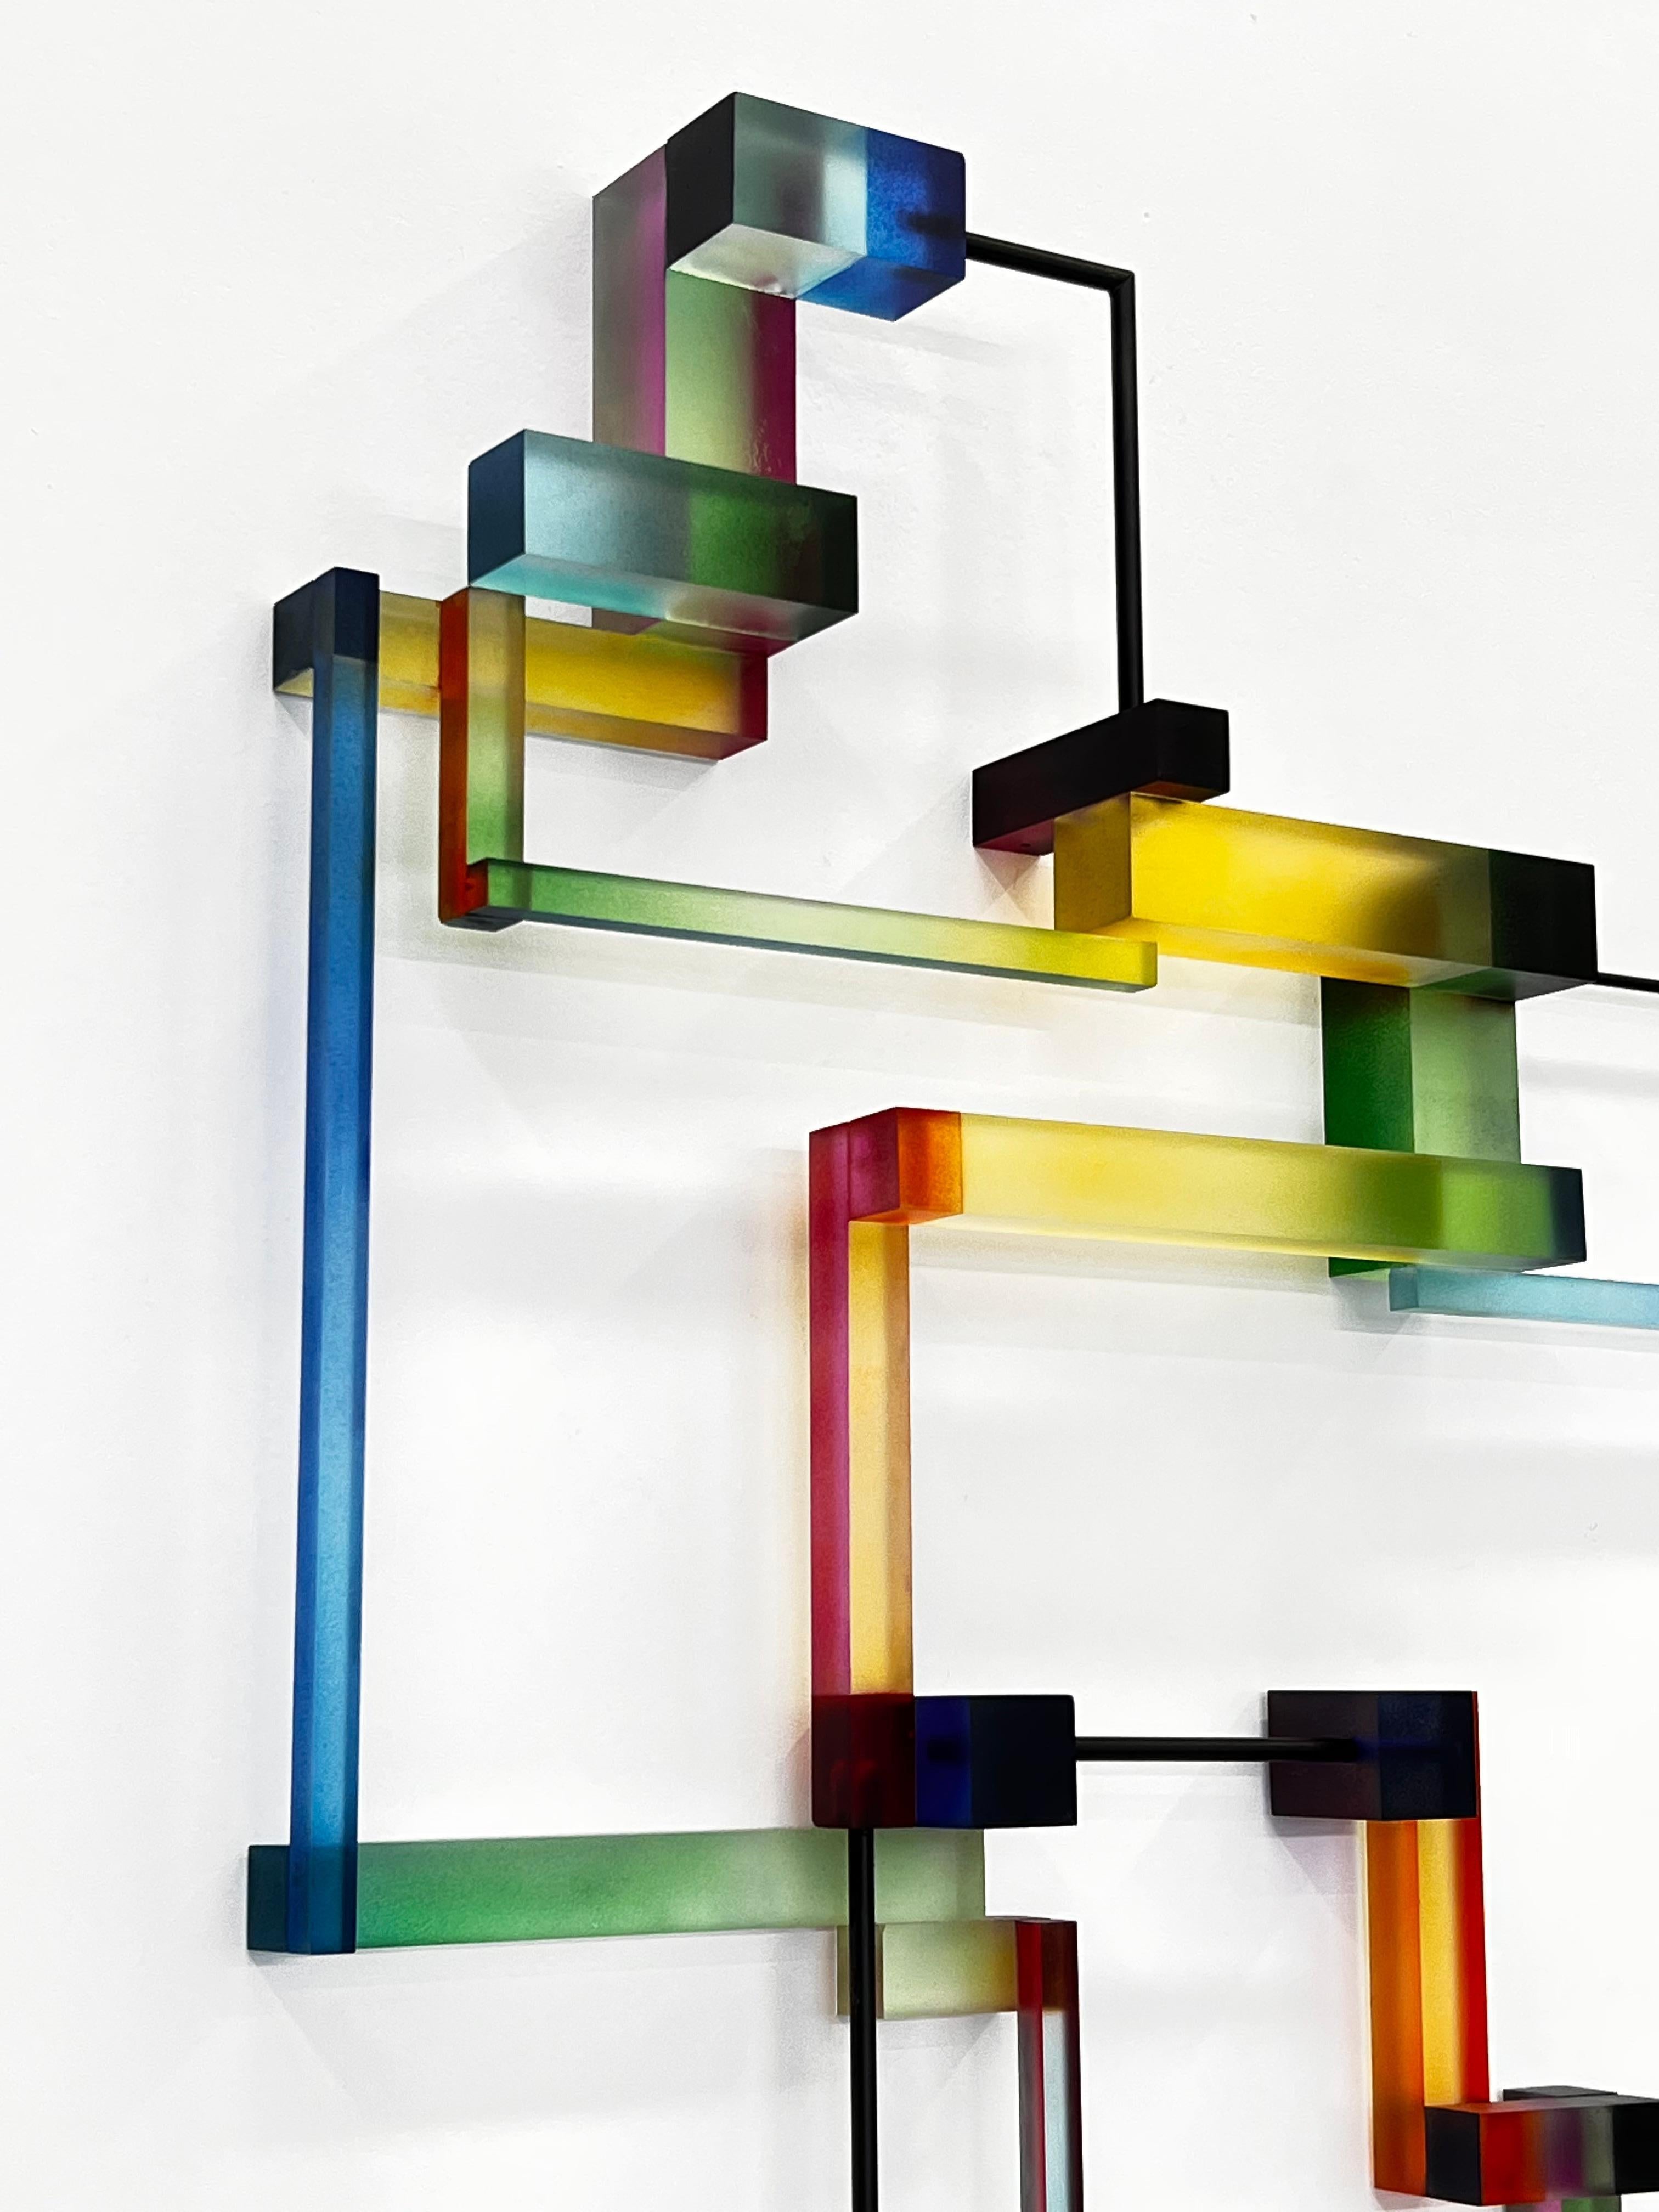 Greg Chann crée des sculptures géométriques abstraites contemporaines. Ses constructions sont des systèmes complexes entrelacés d'éléments physiques variant en taille, en matériau et en couleur. Ces éléments sont réunis en une multitude de points,